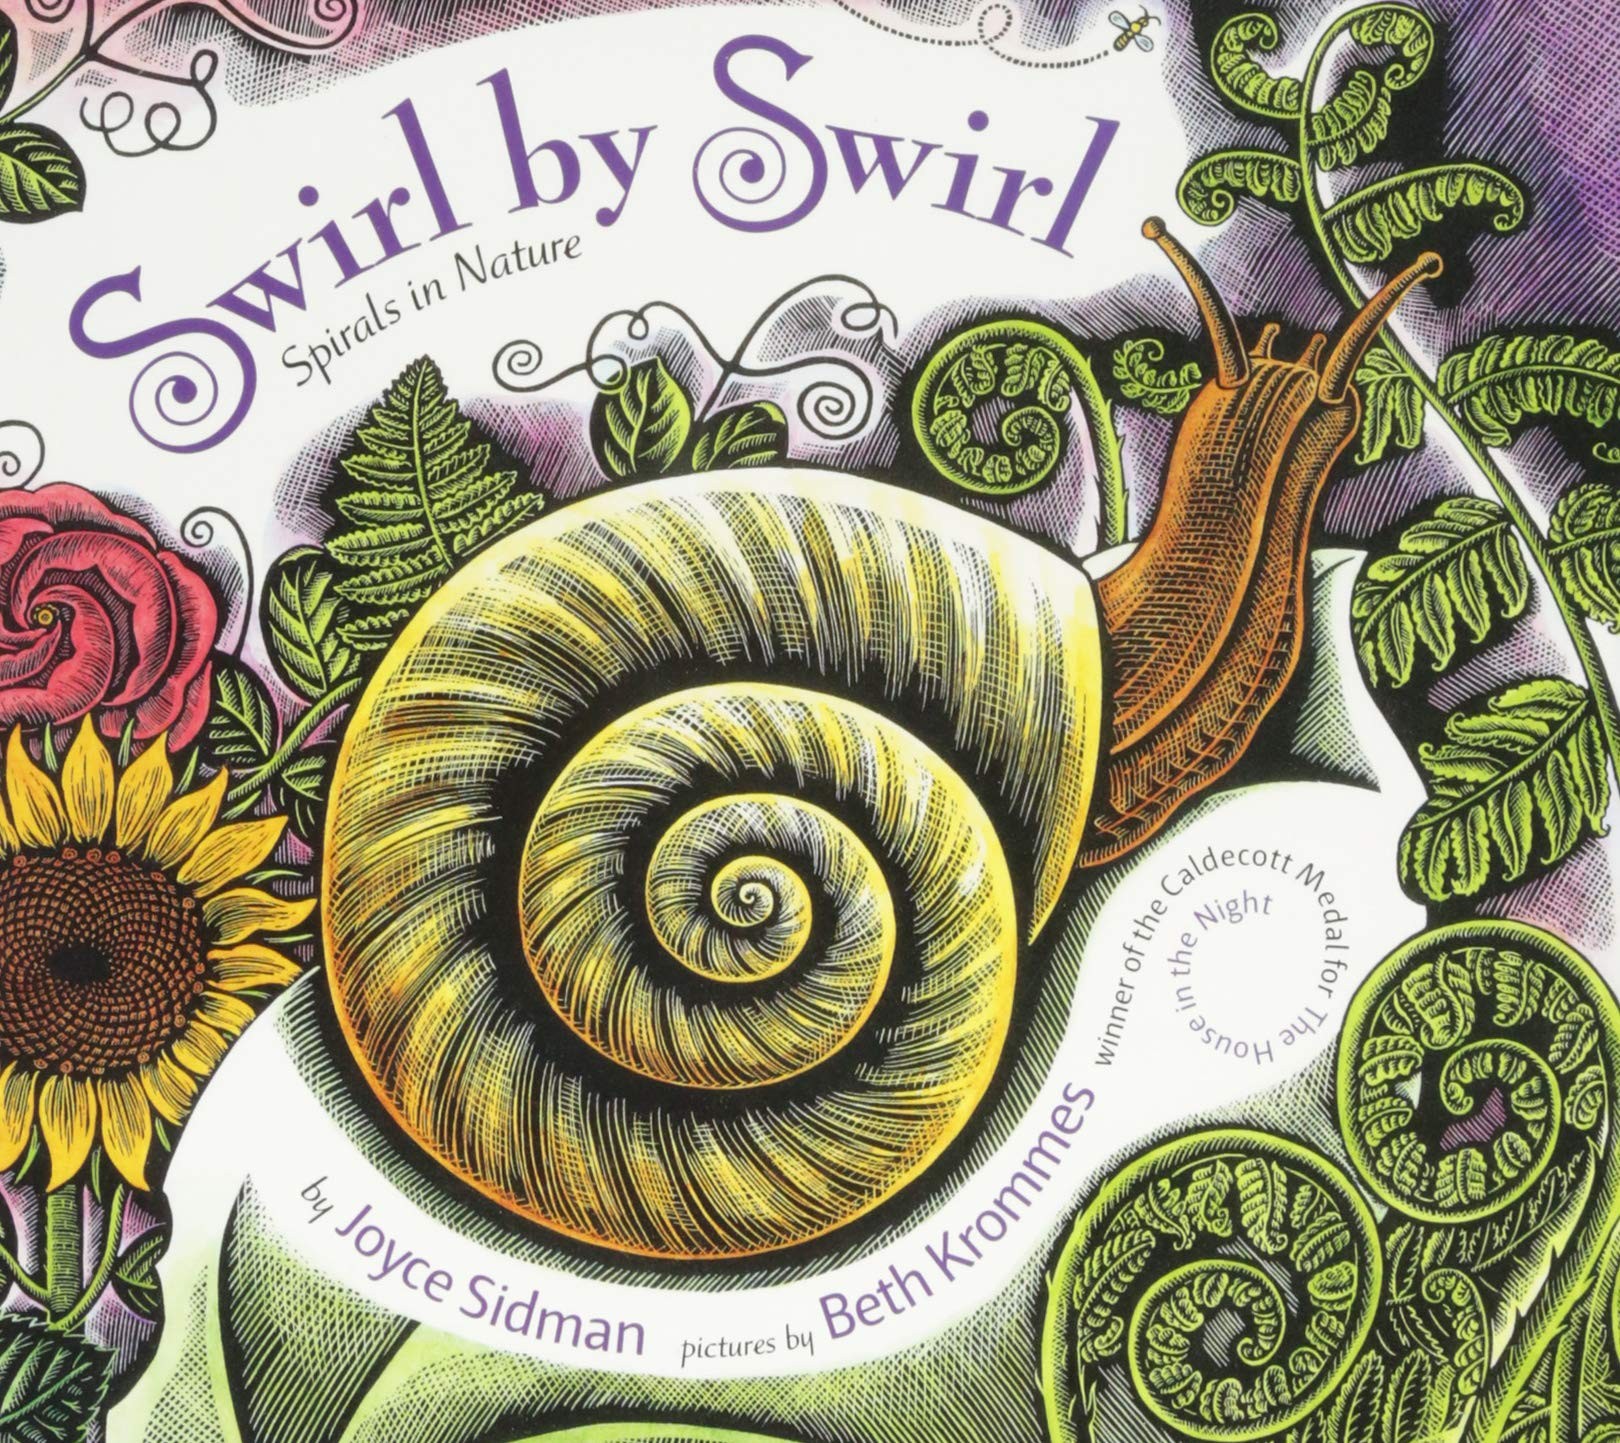 Swirl by Swirl: Spirals in Nature